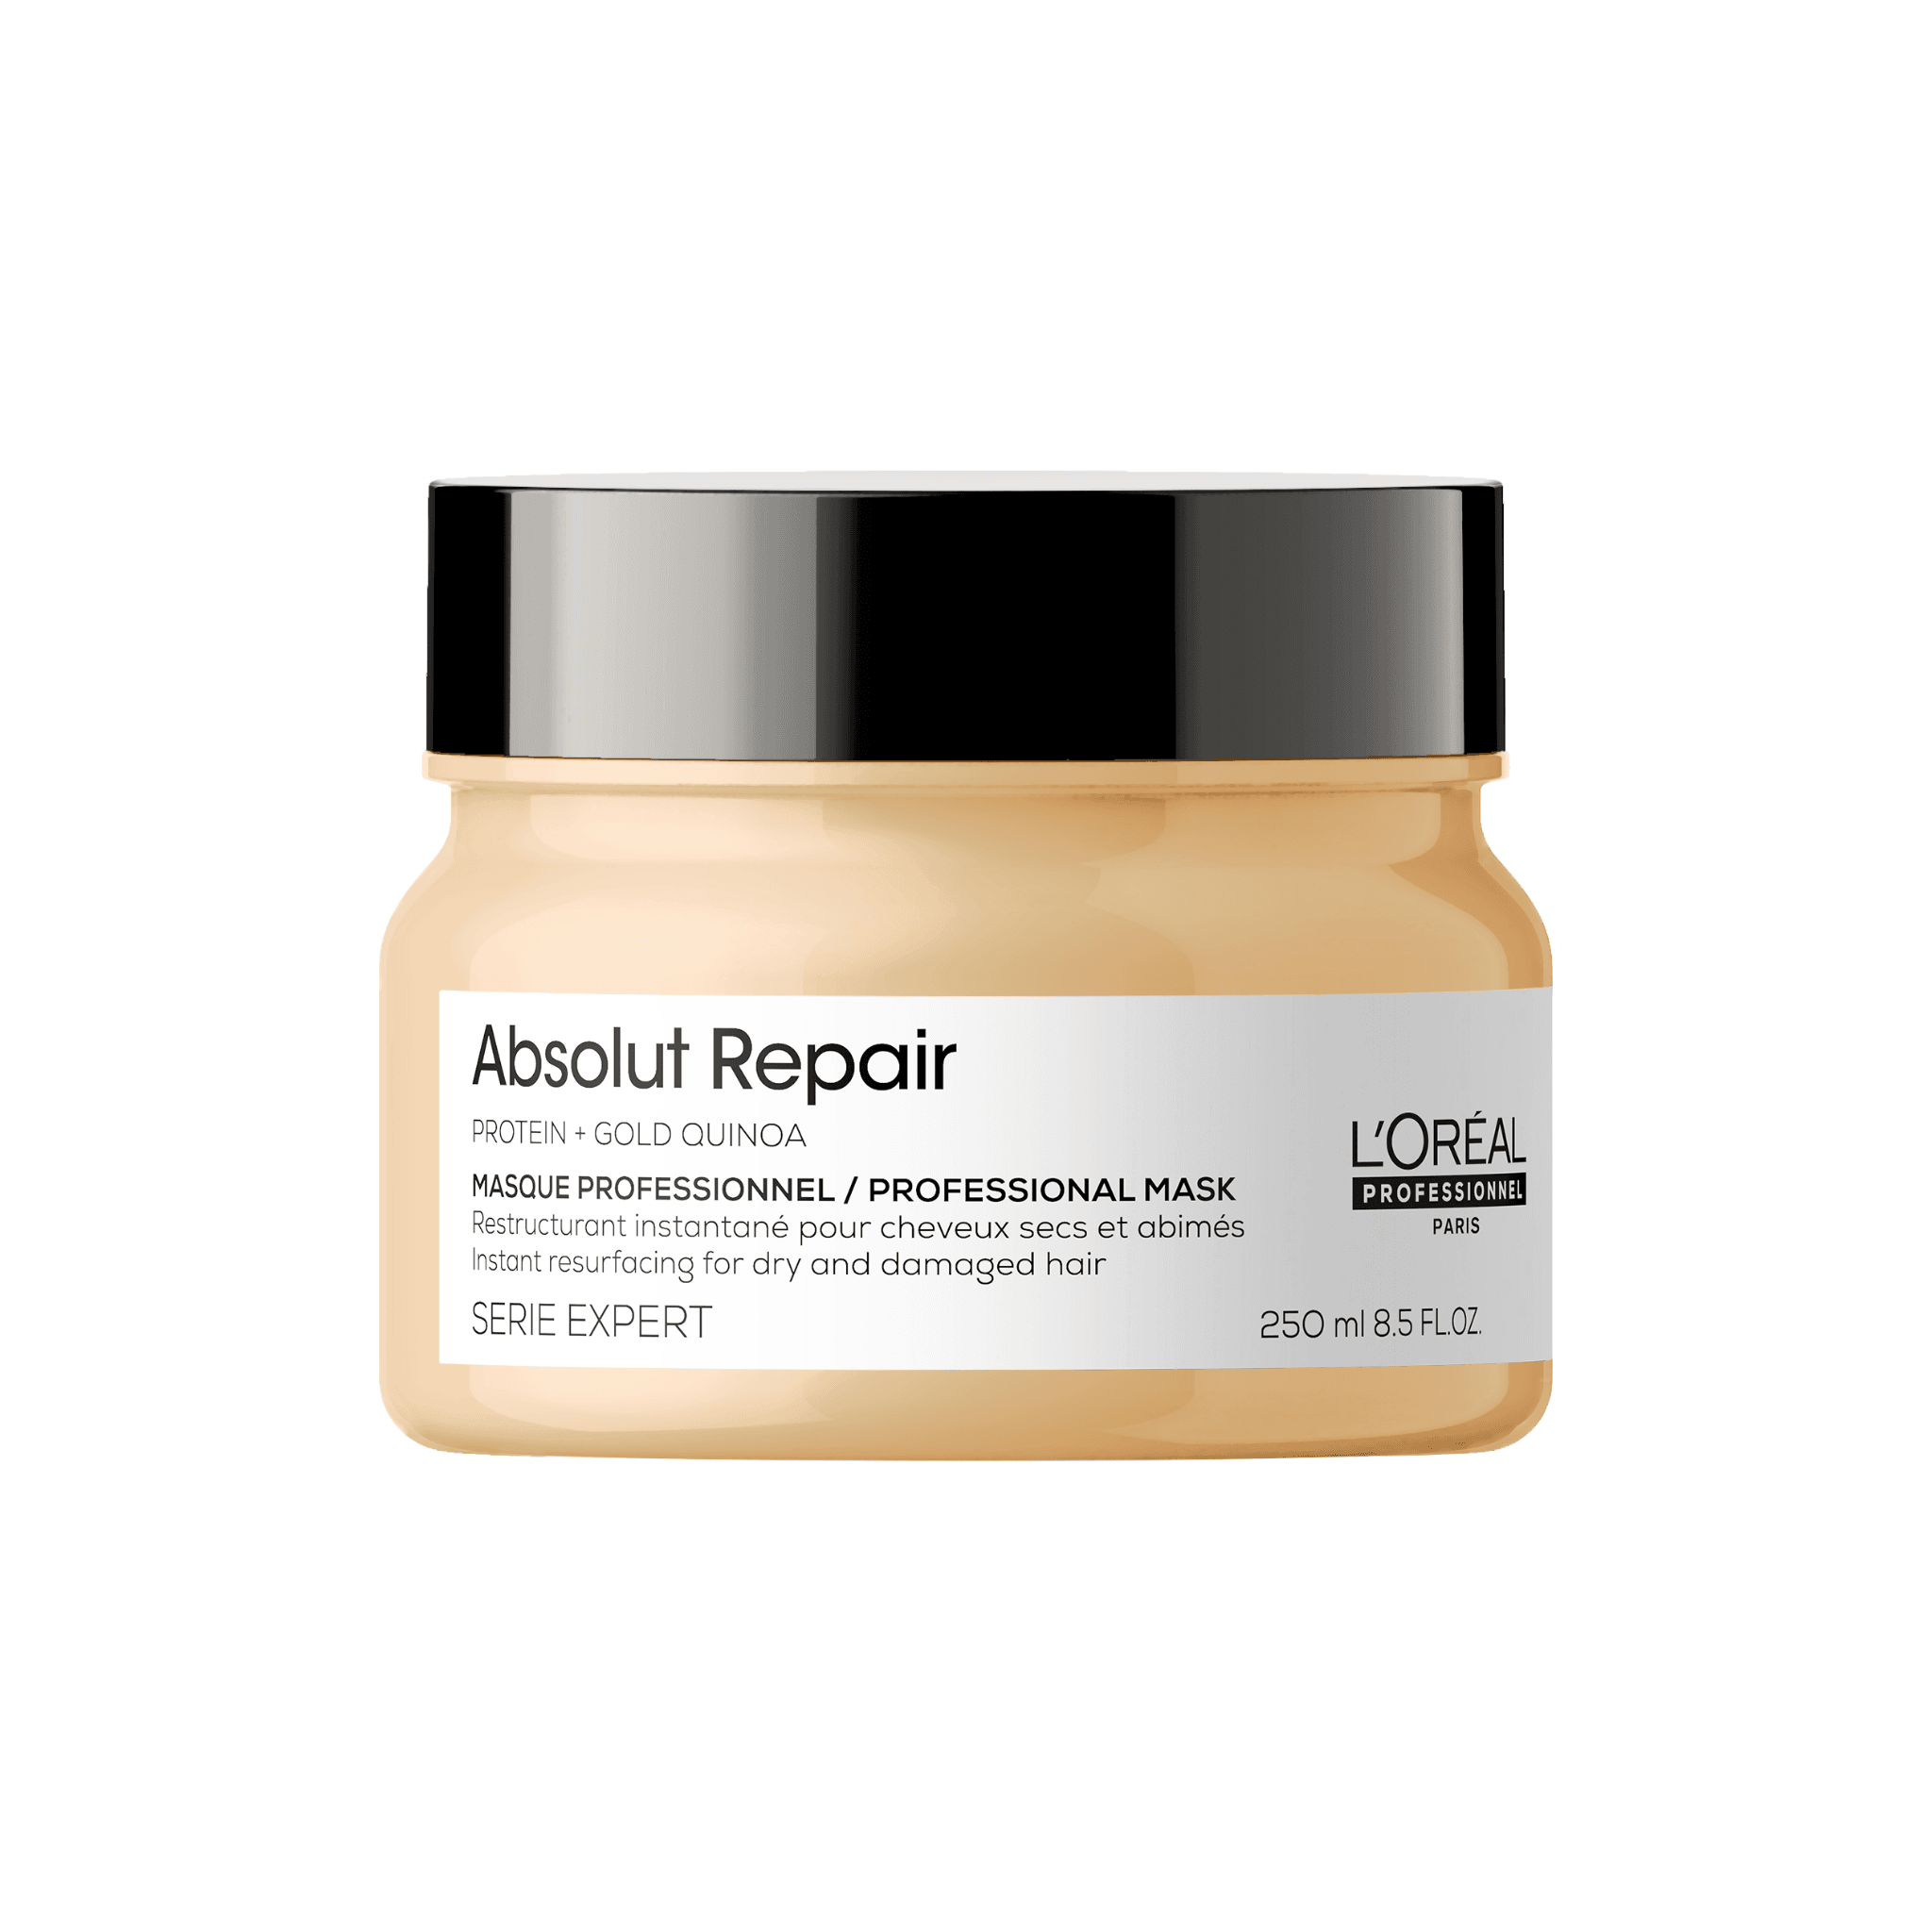 L’Oréal Série Expert. Masque Restructurant Absolut Repair - 250 ml - Concept C. Shop